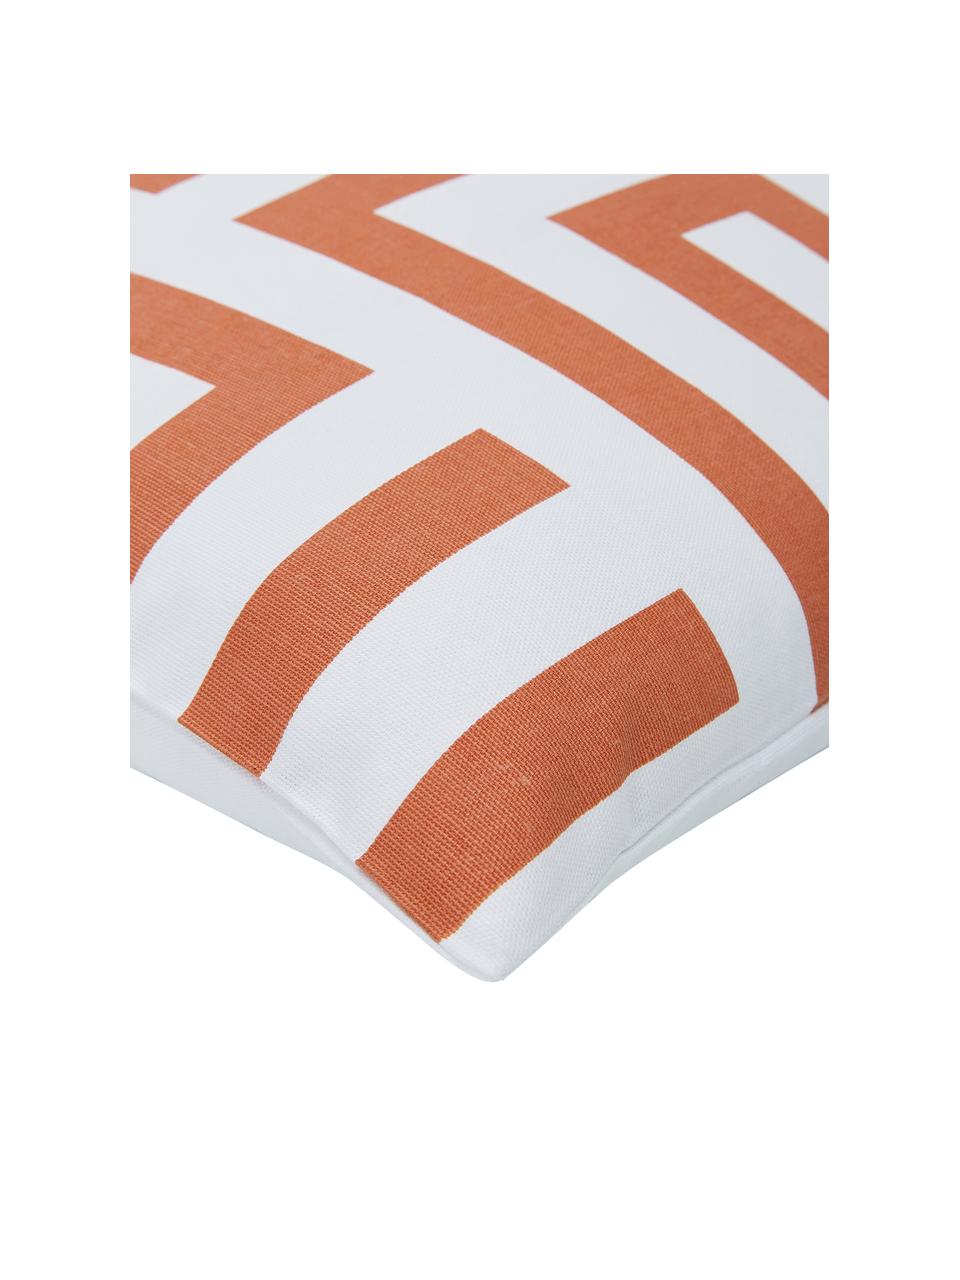 Federa arredo con motivo grafico arancione/bianco Bram, 100% cotone, Bianco, arancione, Larg. 45 x Lung. 45 cm